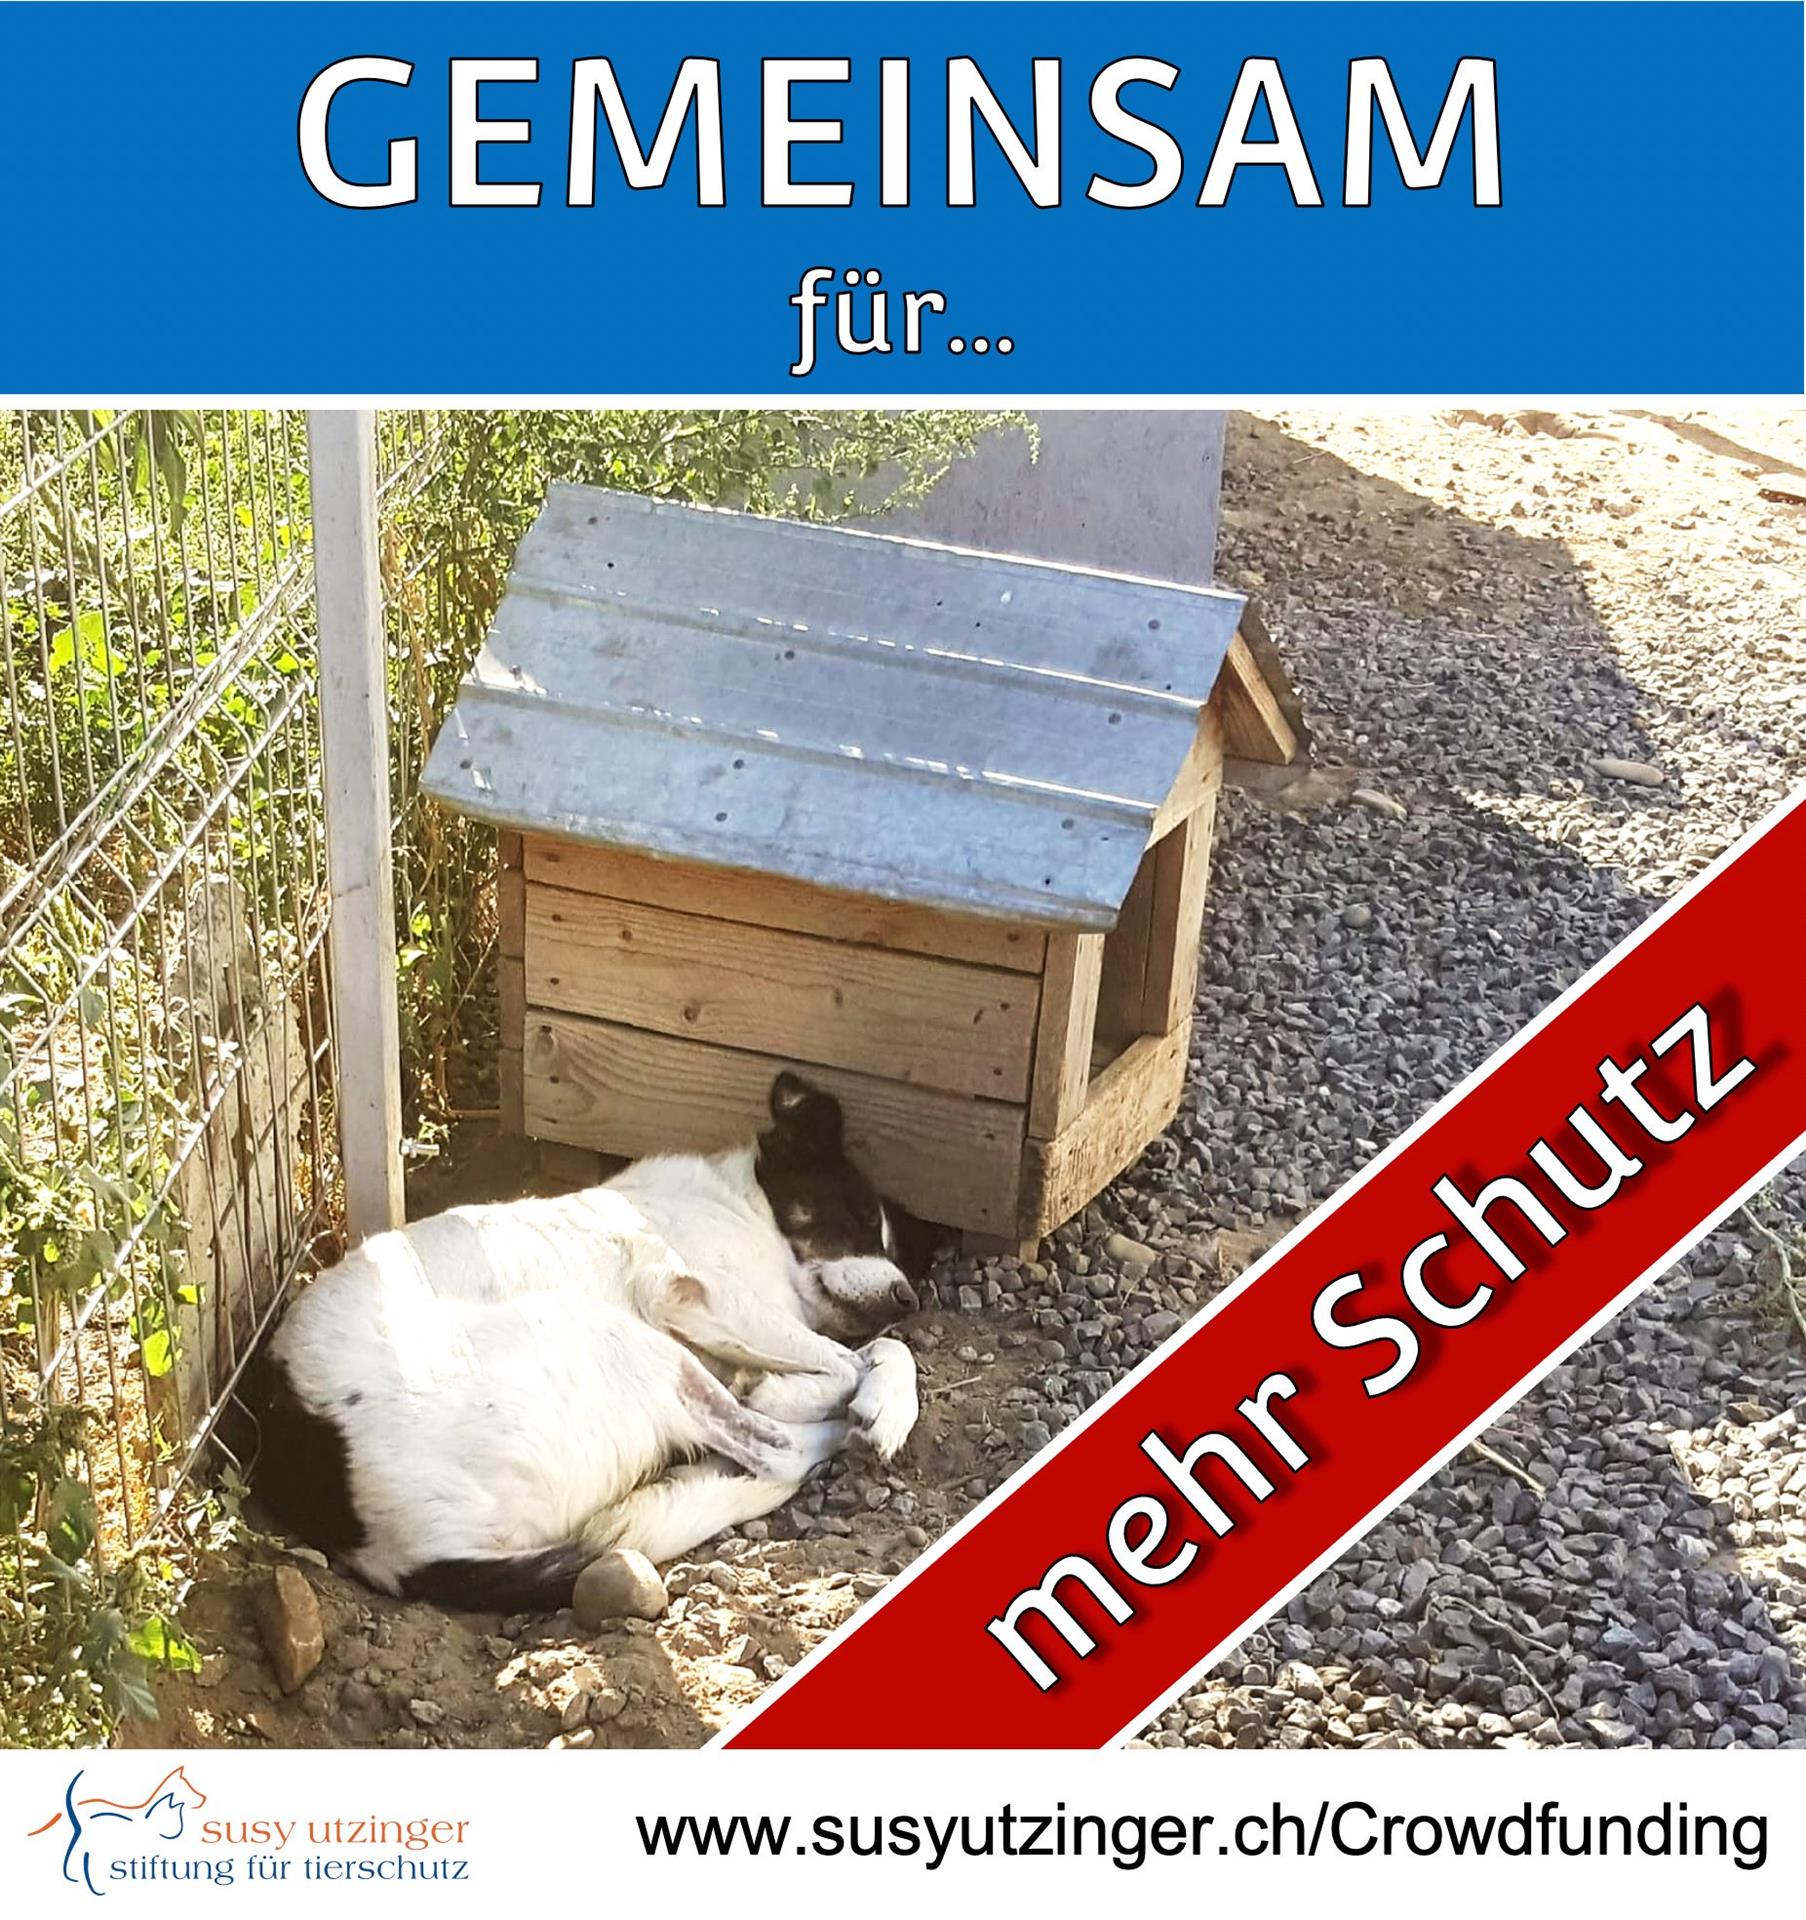 Crowdfunding für das SUST-Shelter in Galati, Rumänien